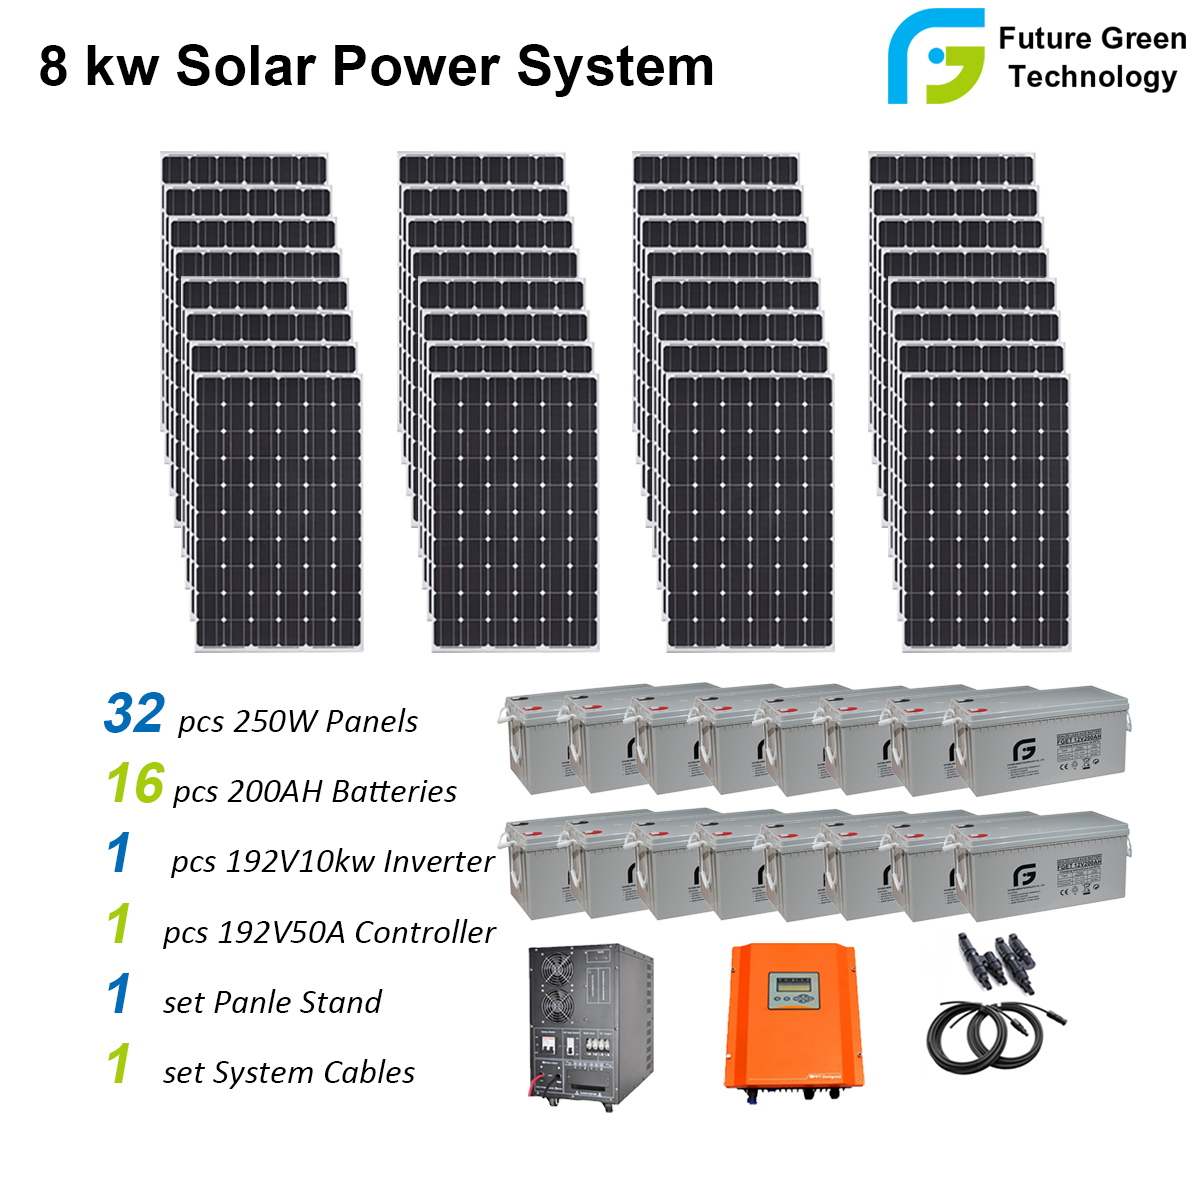 8kw Solar Power System